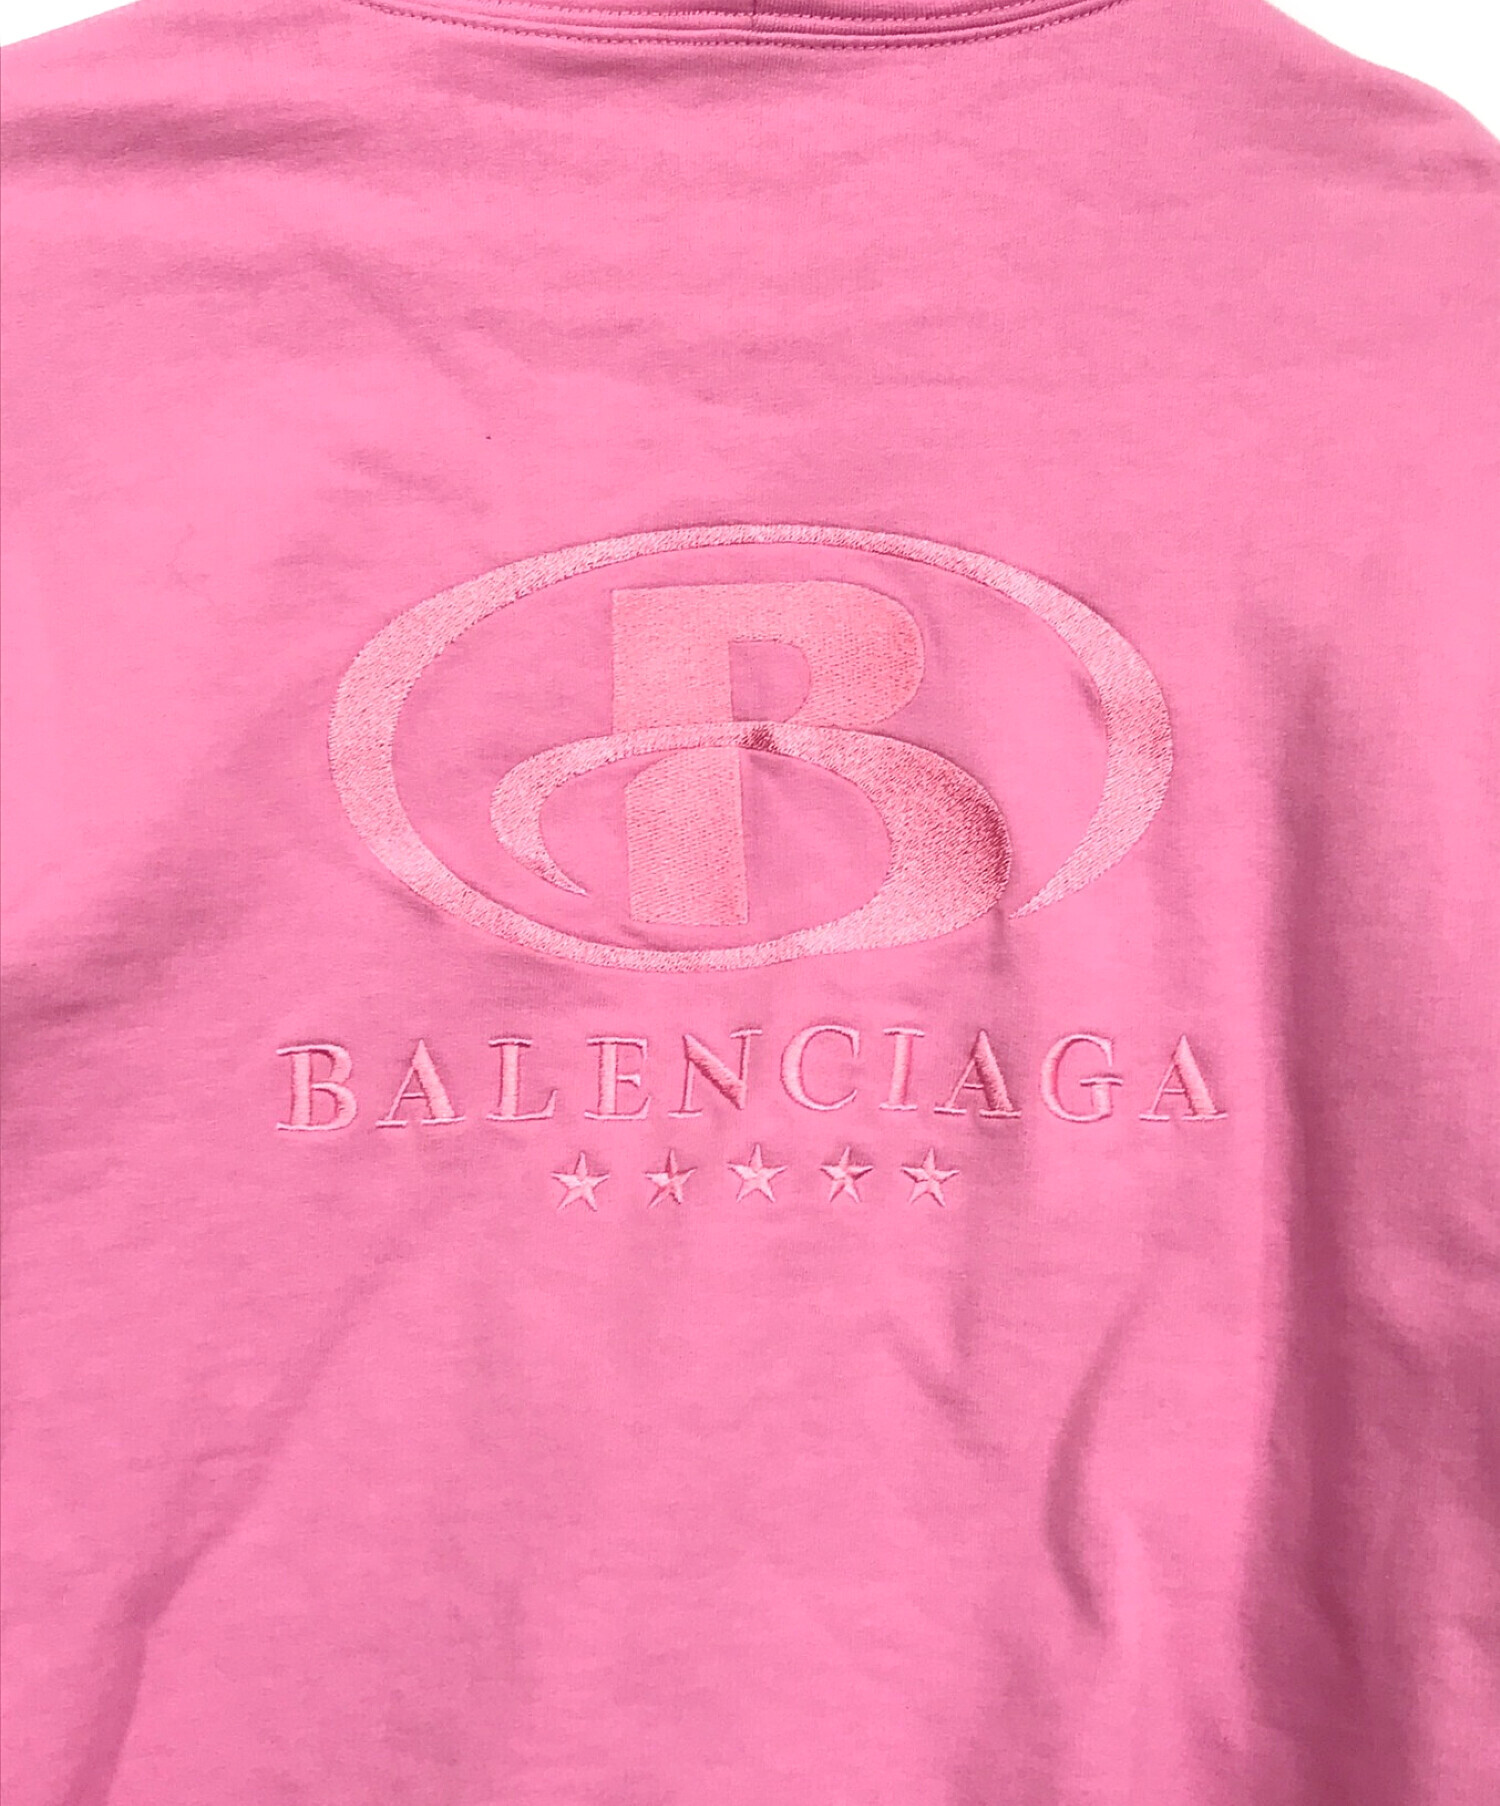 BALENCIAGA (バレンシアガ) 刺繍パーカー ピンク サイズ:SIZE 1